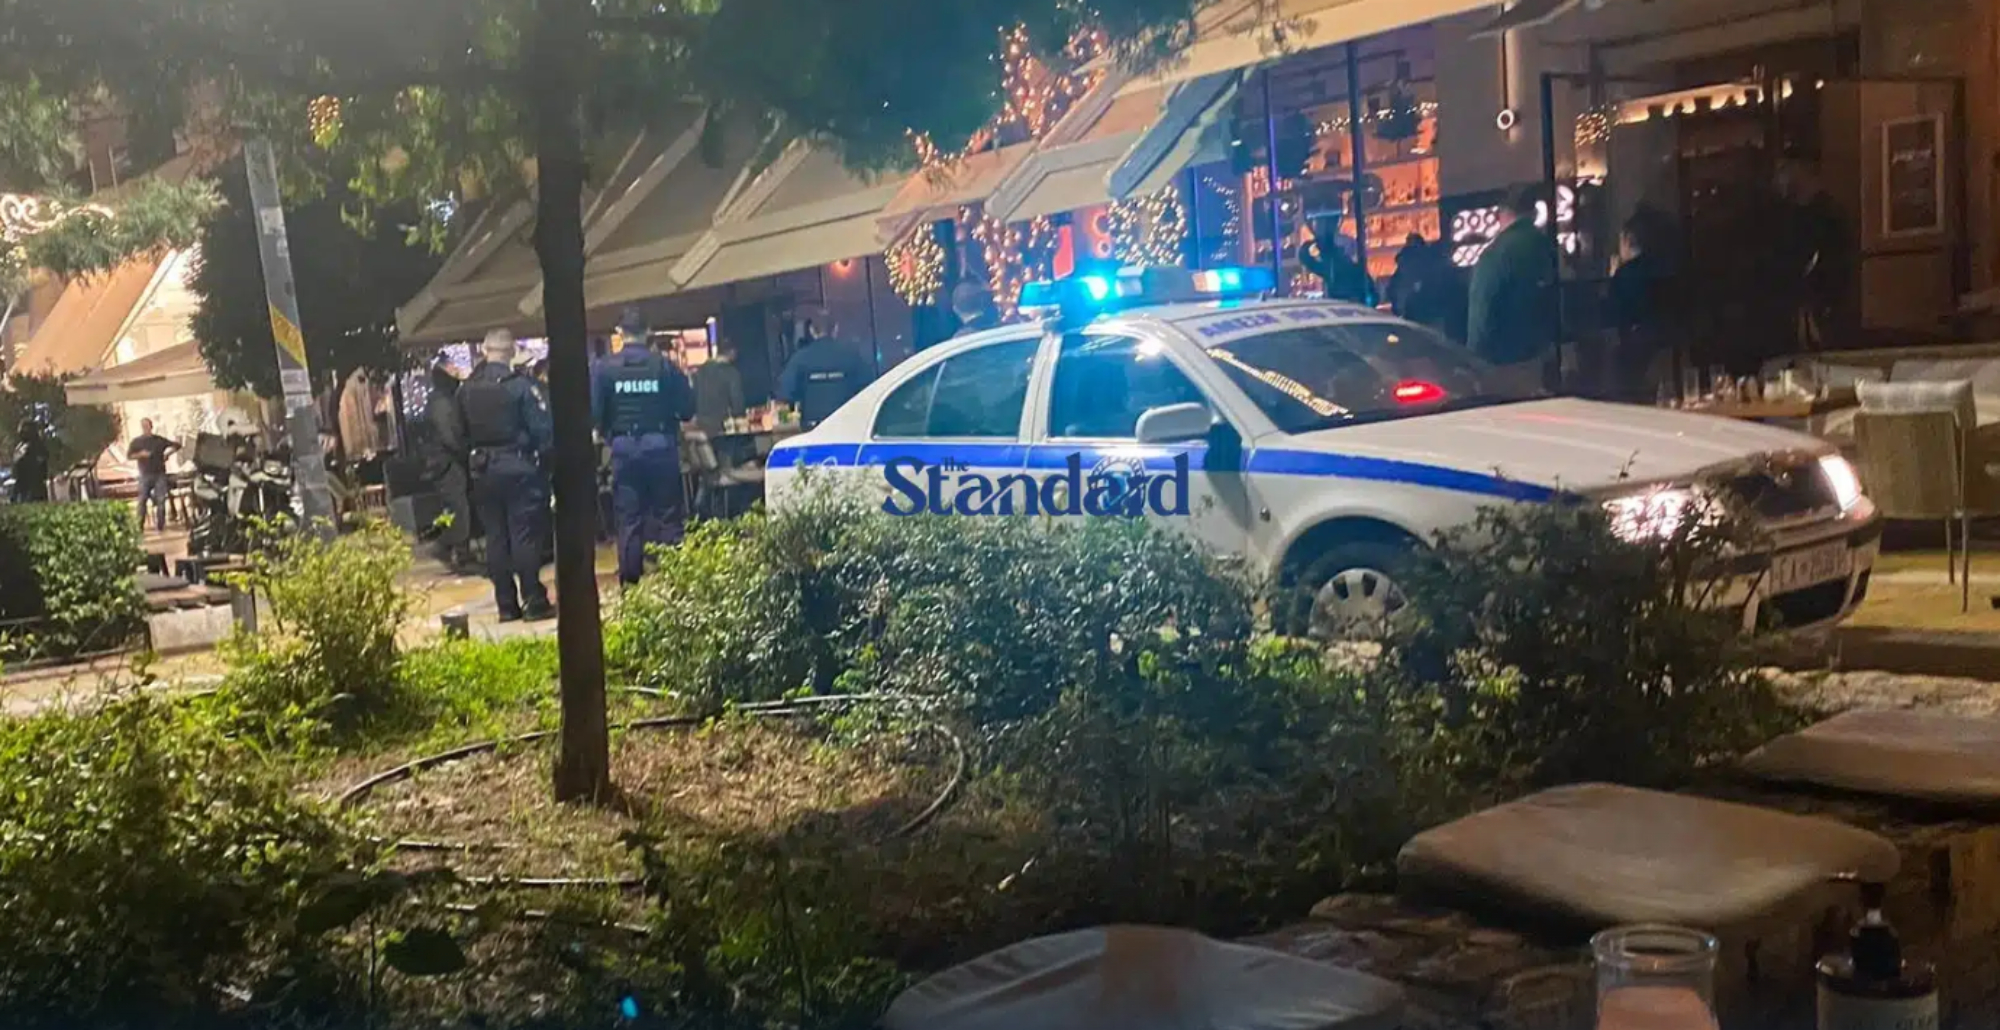 Πυροβολισμοί σε γεμάτο καφέ στην πλατεία Νέας Σμύρνης -Ένας νεκρός και 2 τραυματίες (VIDEO)